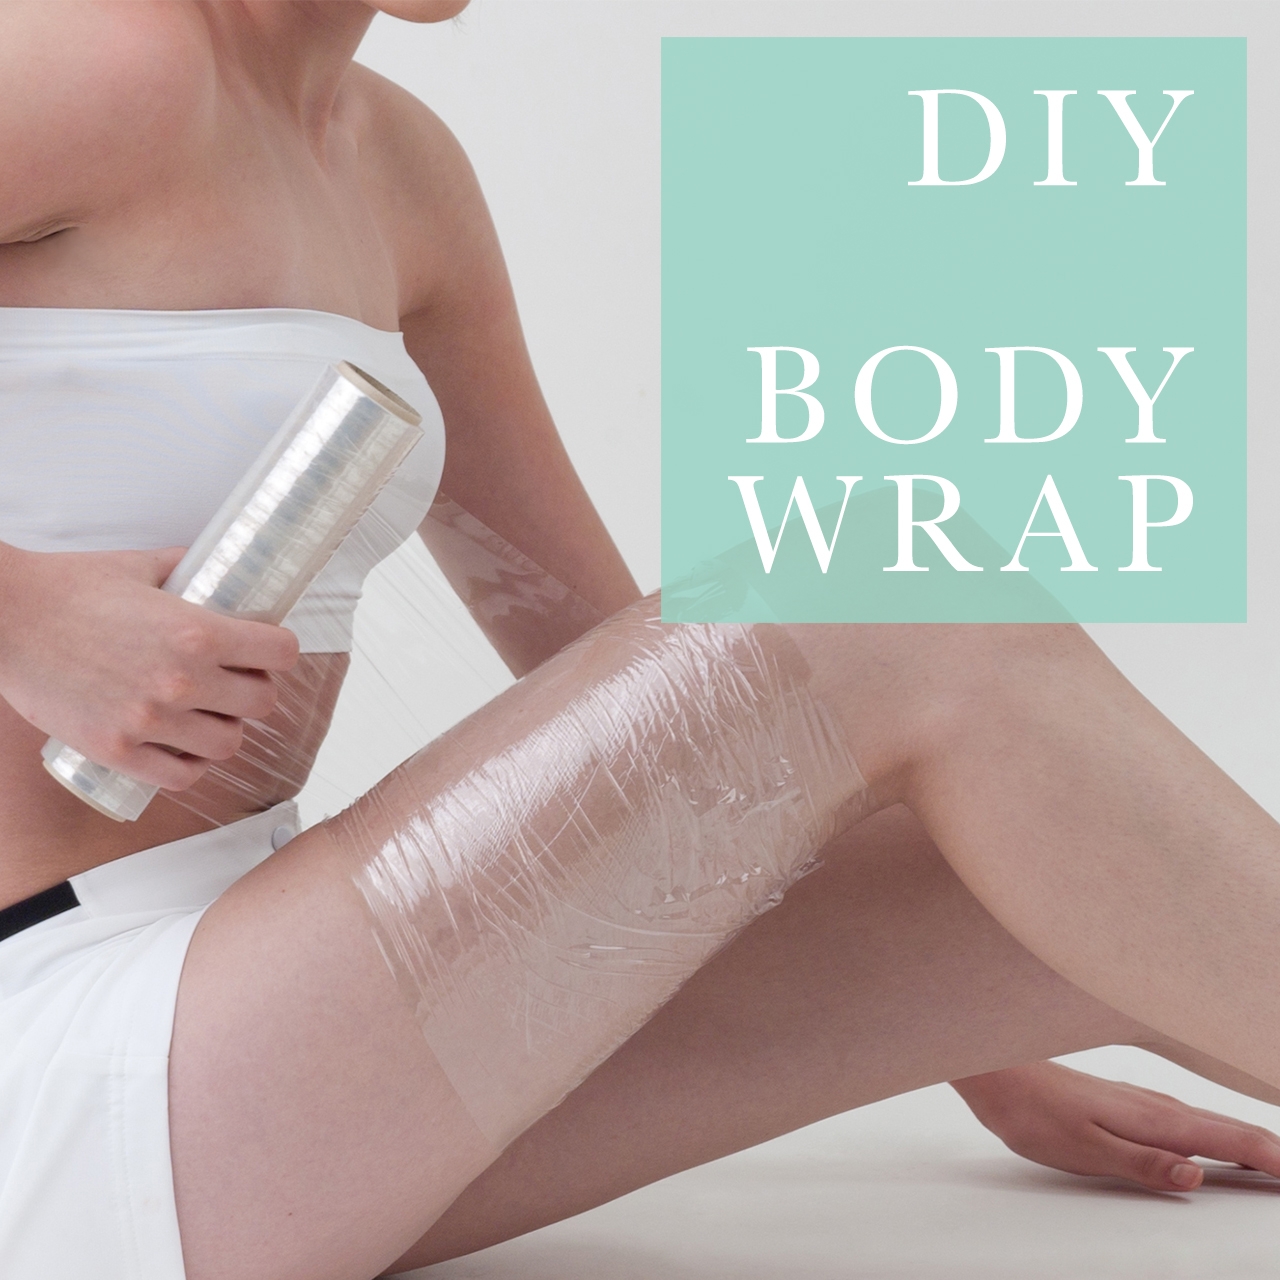 Phương pháp này có tên tiếng Anh là DIY Body Wrap.